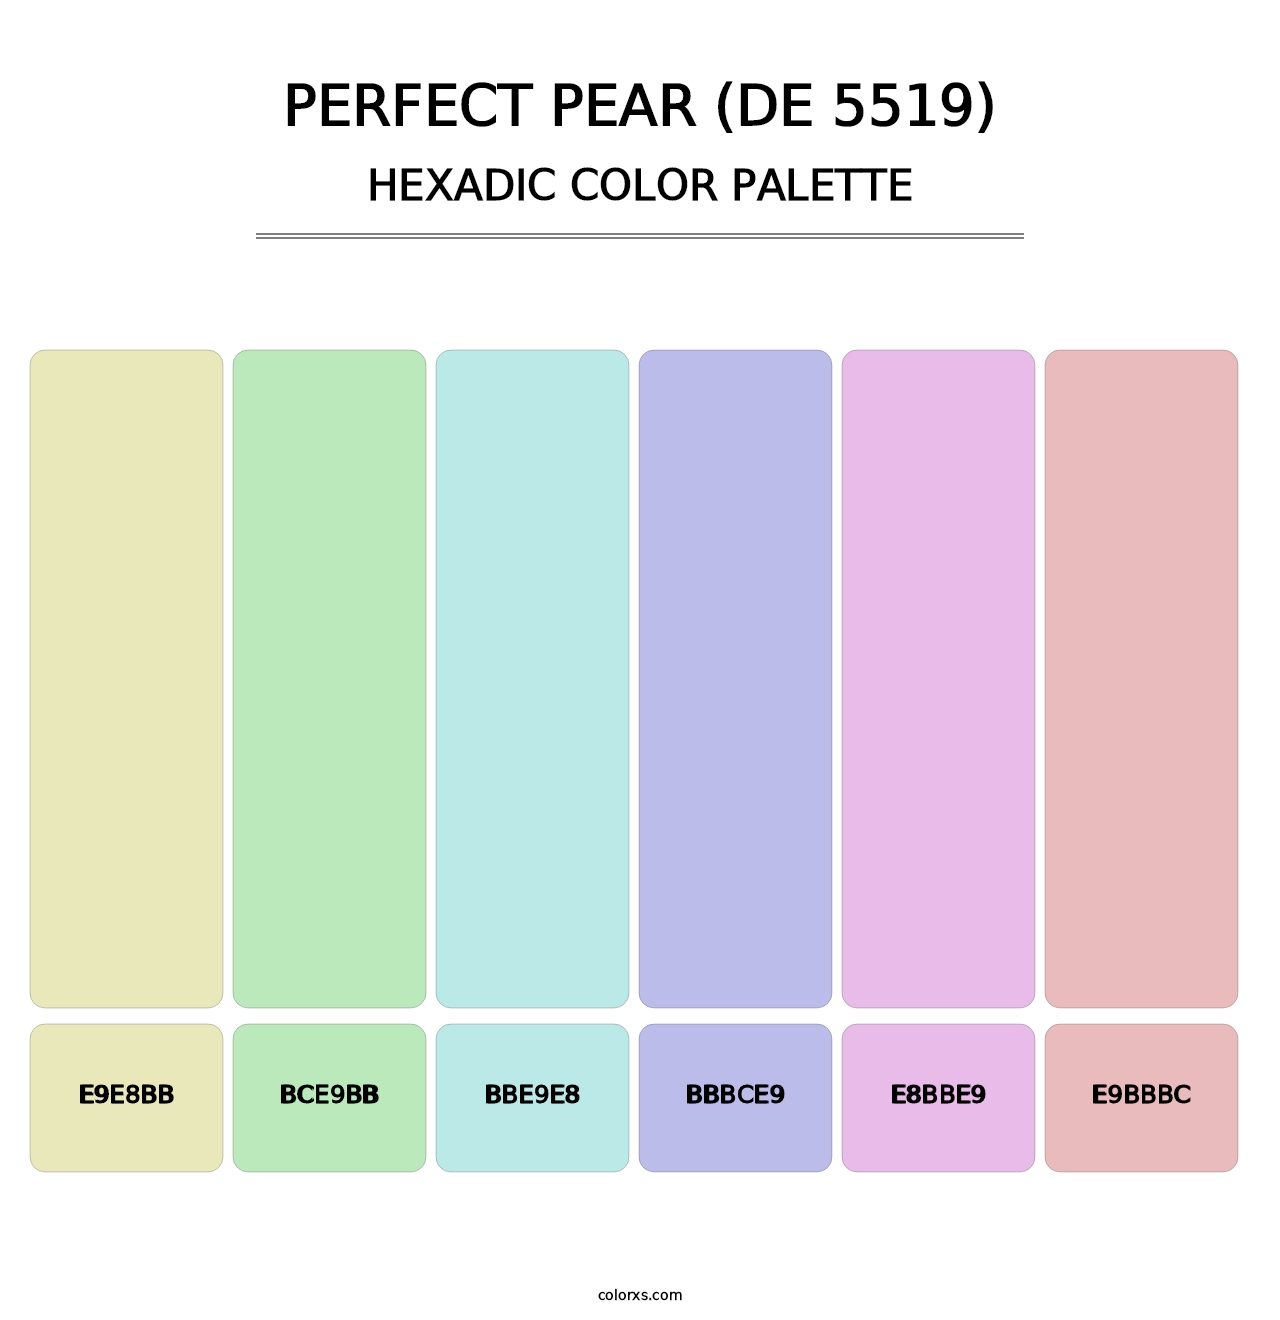 Perfect Pear (DE 5519) - Hexadic Color Palette